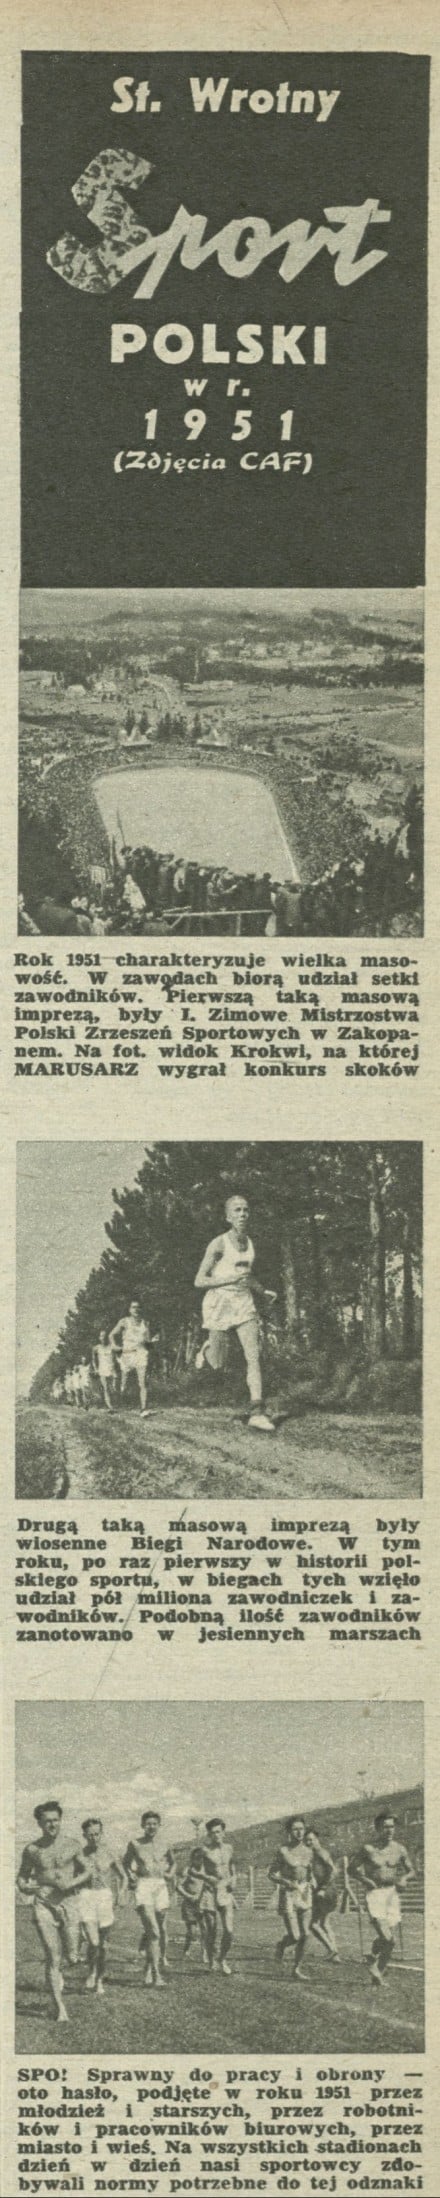 Sport polski w roku 1951 